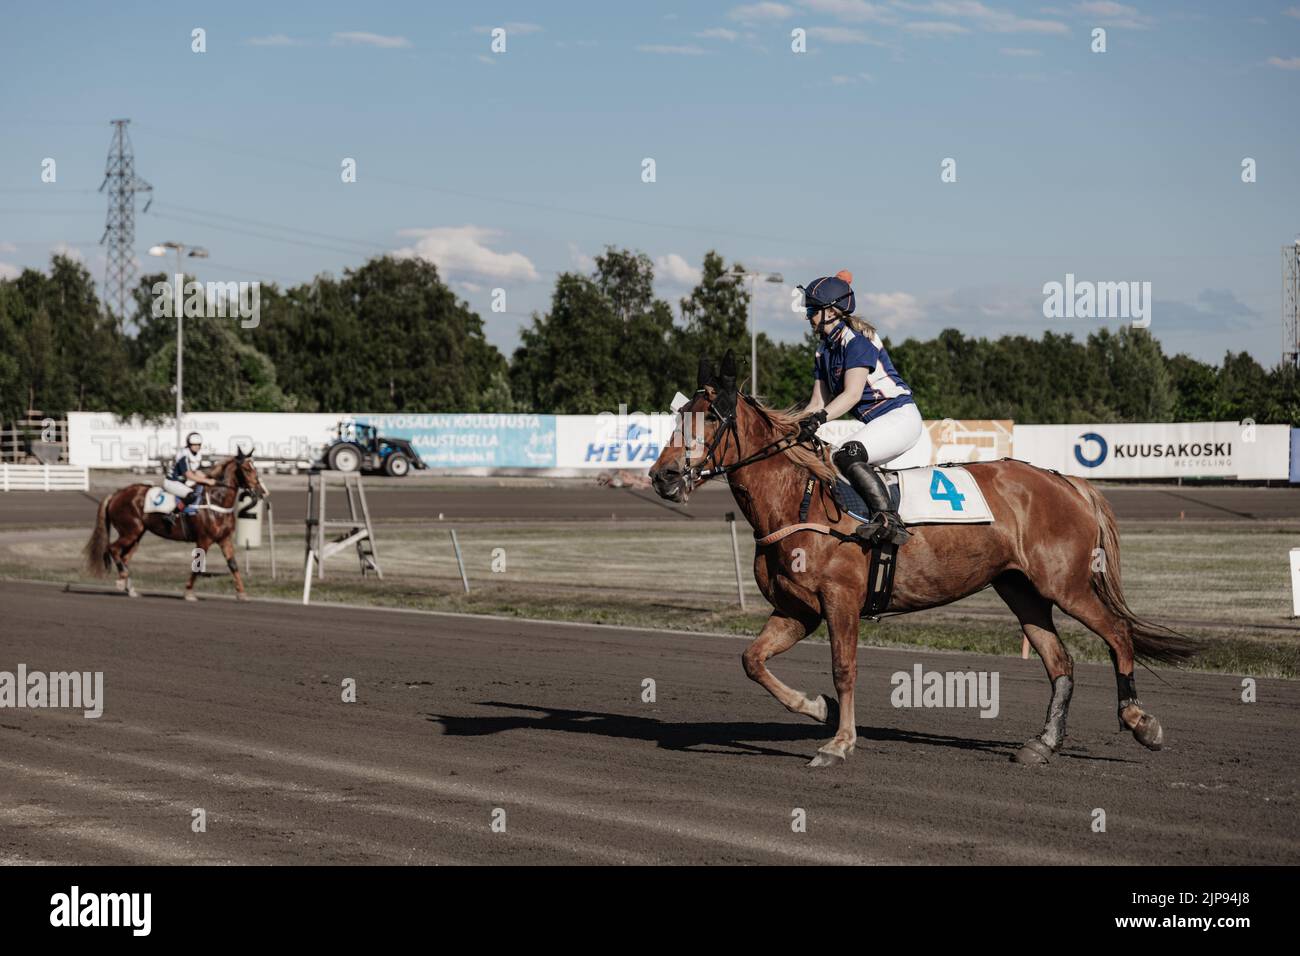 Le corse di cavalli a Oulu, Finlandia. Sport equestri. Foto Stock